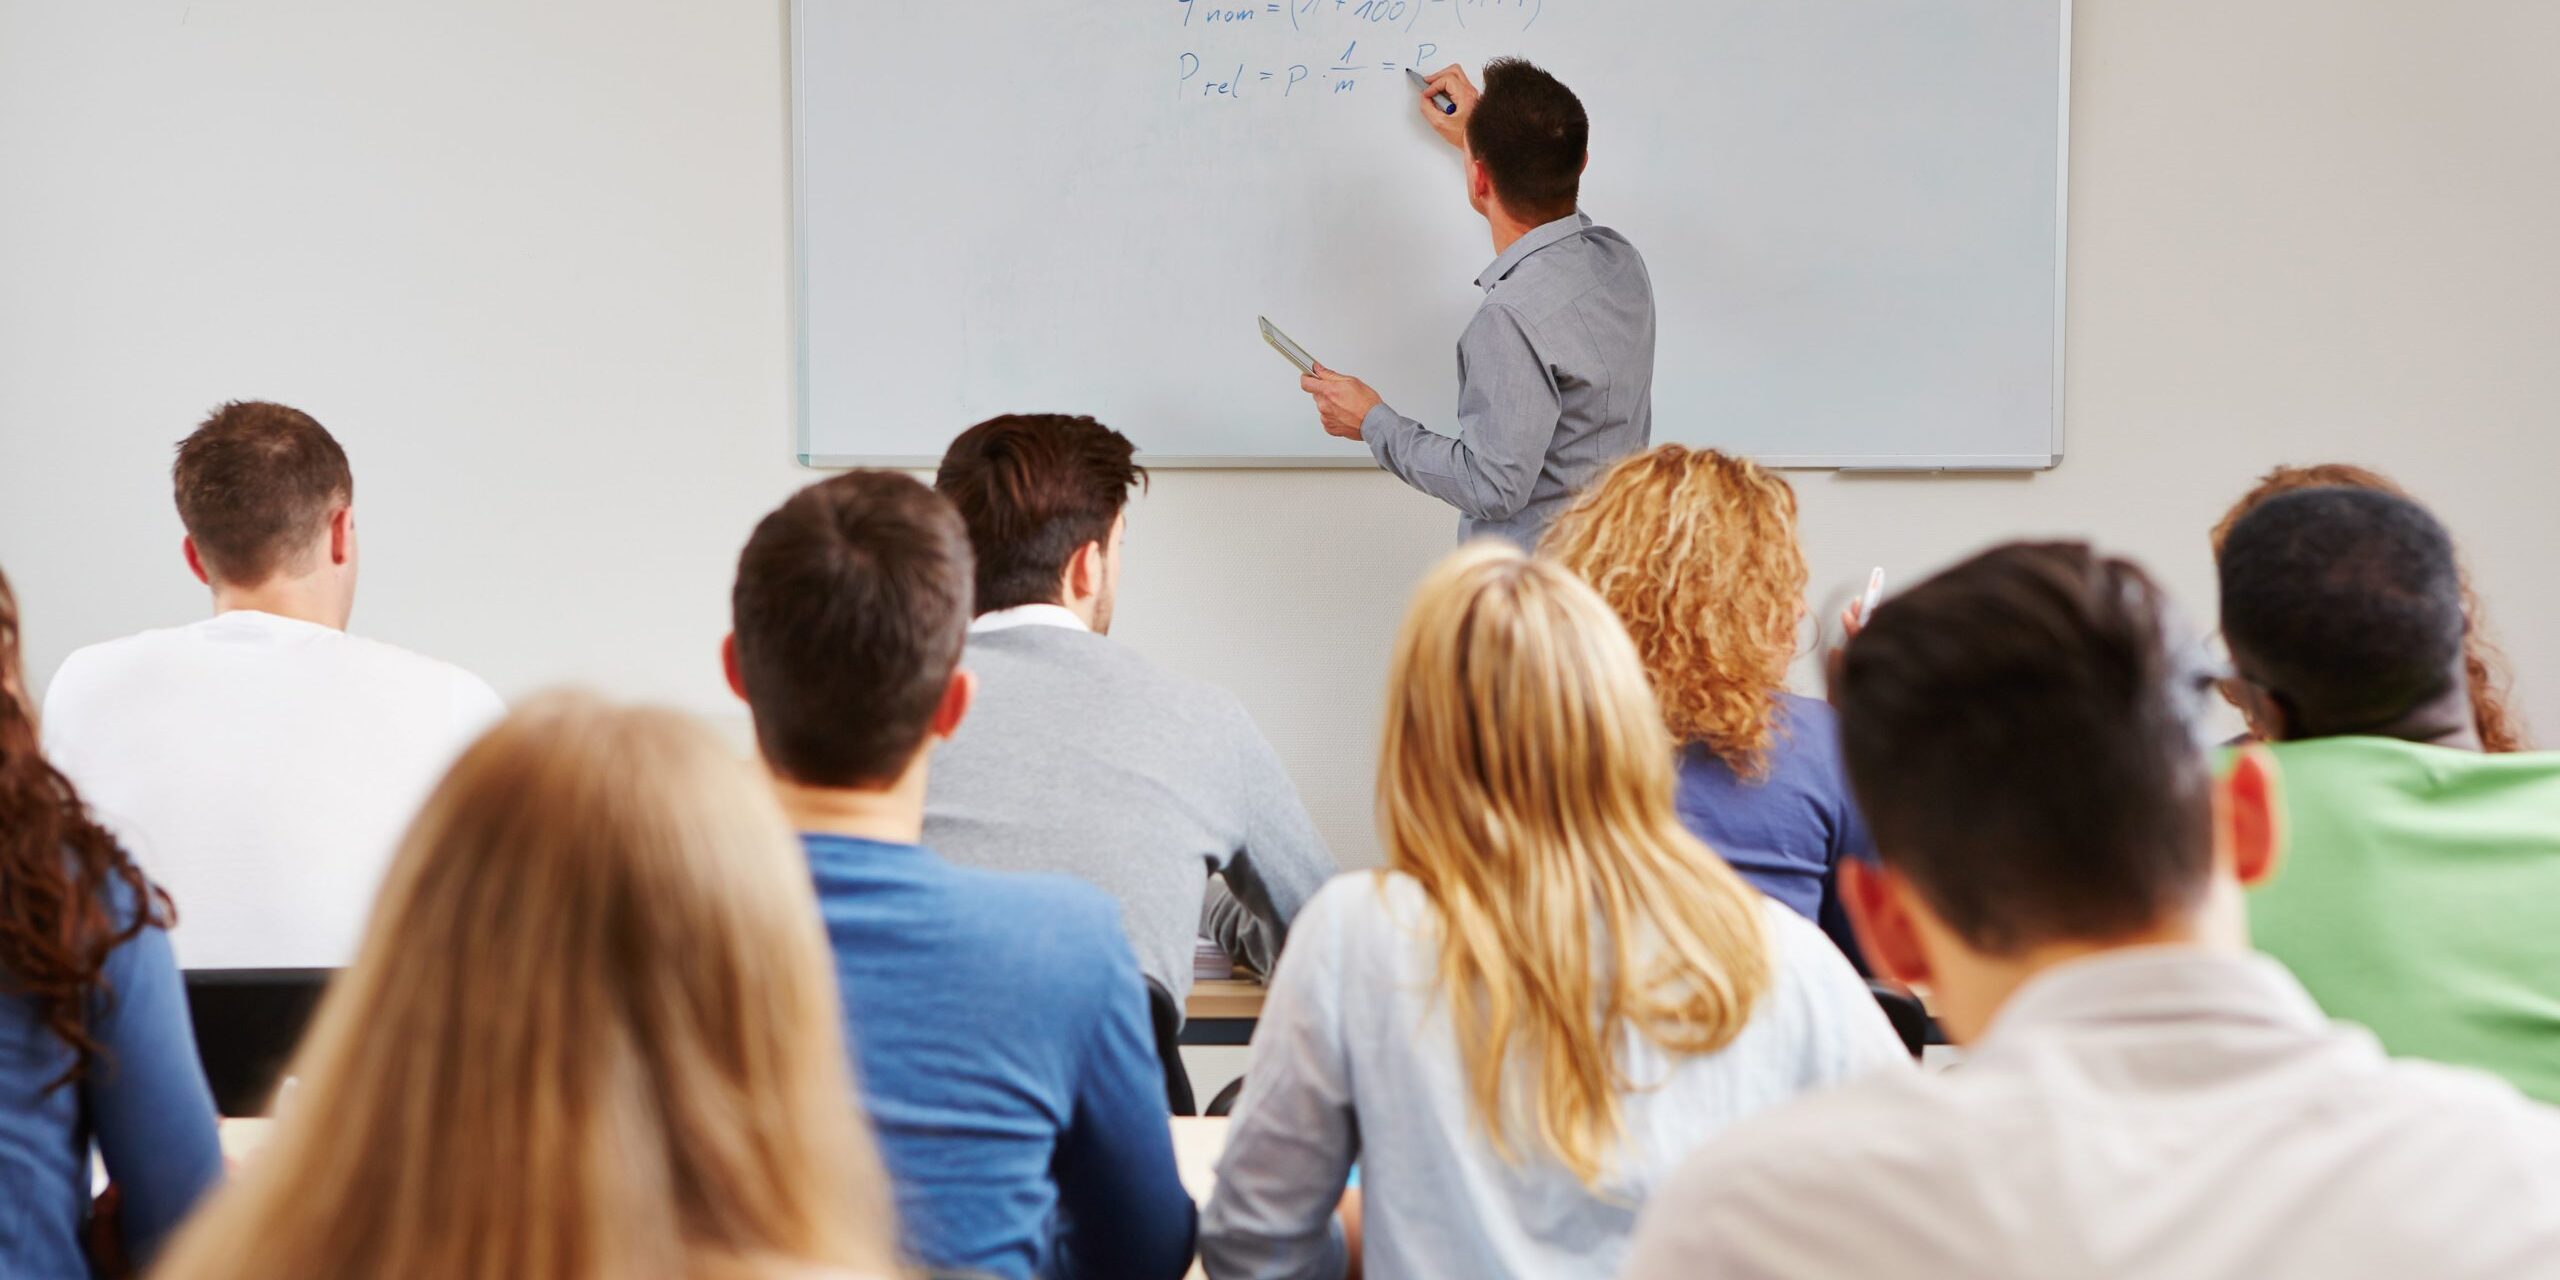 Image d'un professeur écrivant au tableau devant une classe. Représente le projet "Ecole du management"